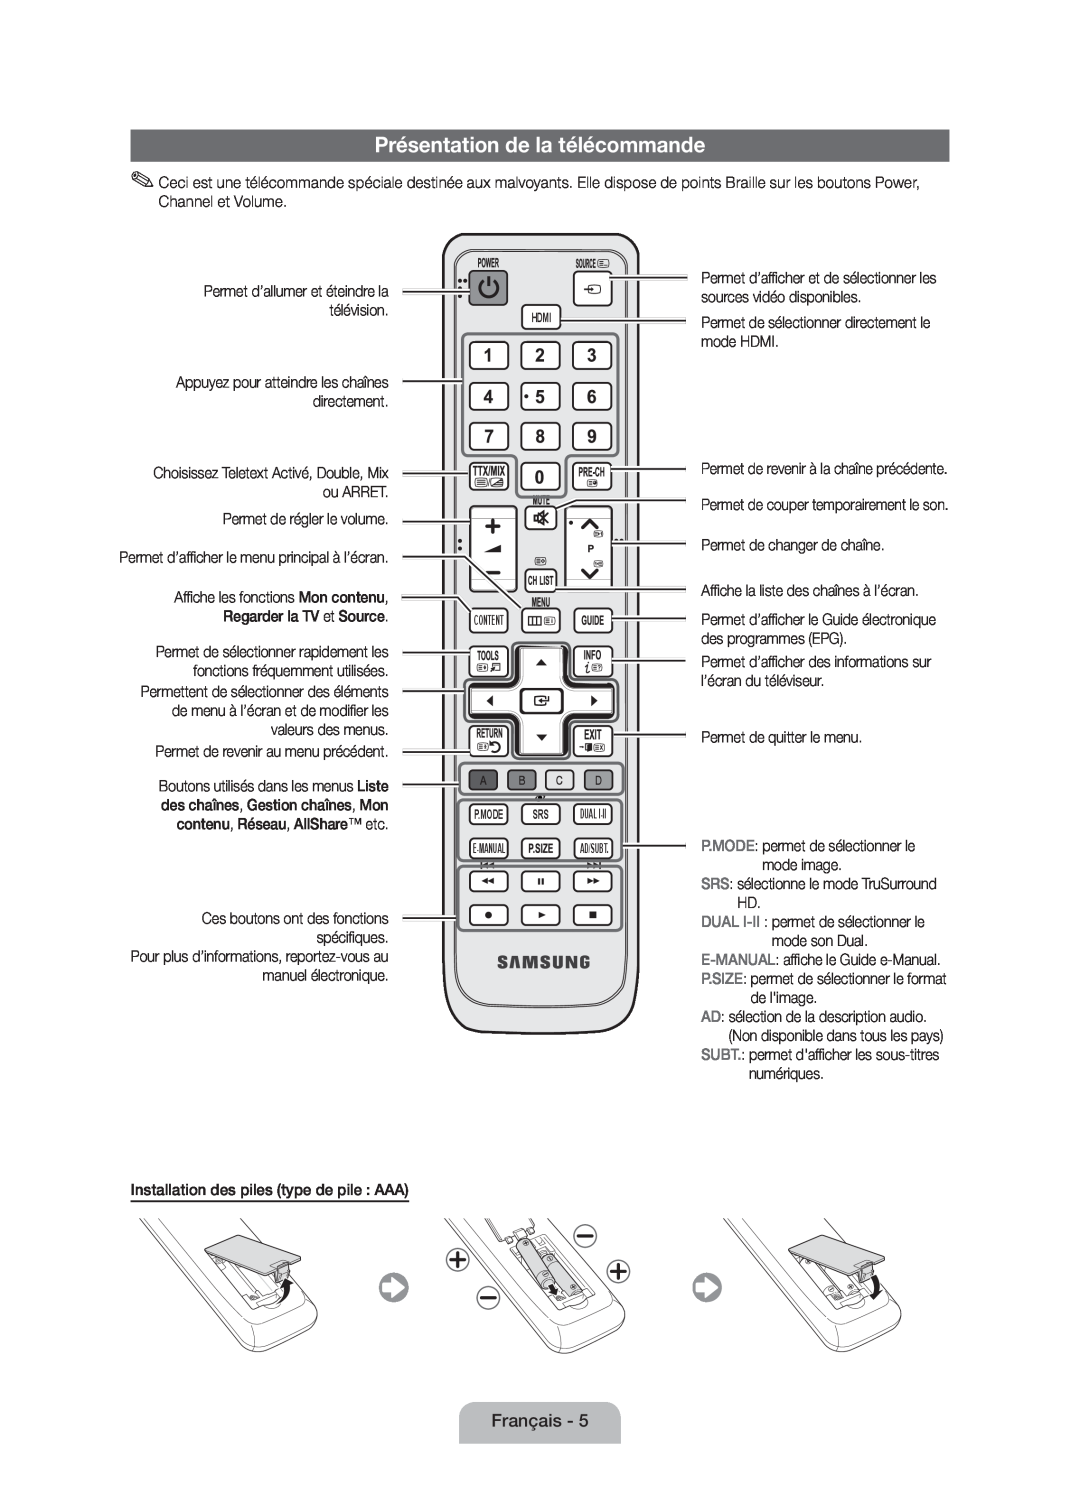 Samsung UE40D5000PWXZT, UE40D5000PWXTK, UE32D5000PWXXN, UE32D5000PWXZG, UE40D5000PWXZG manual Présentation de la télécommande 